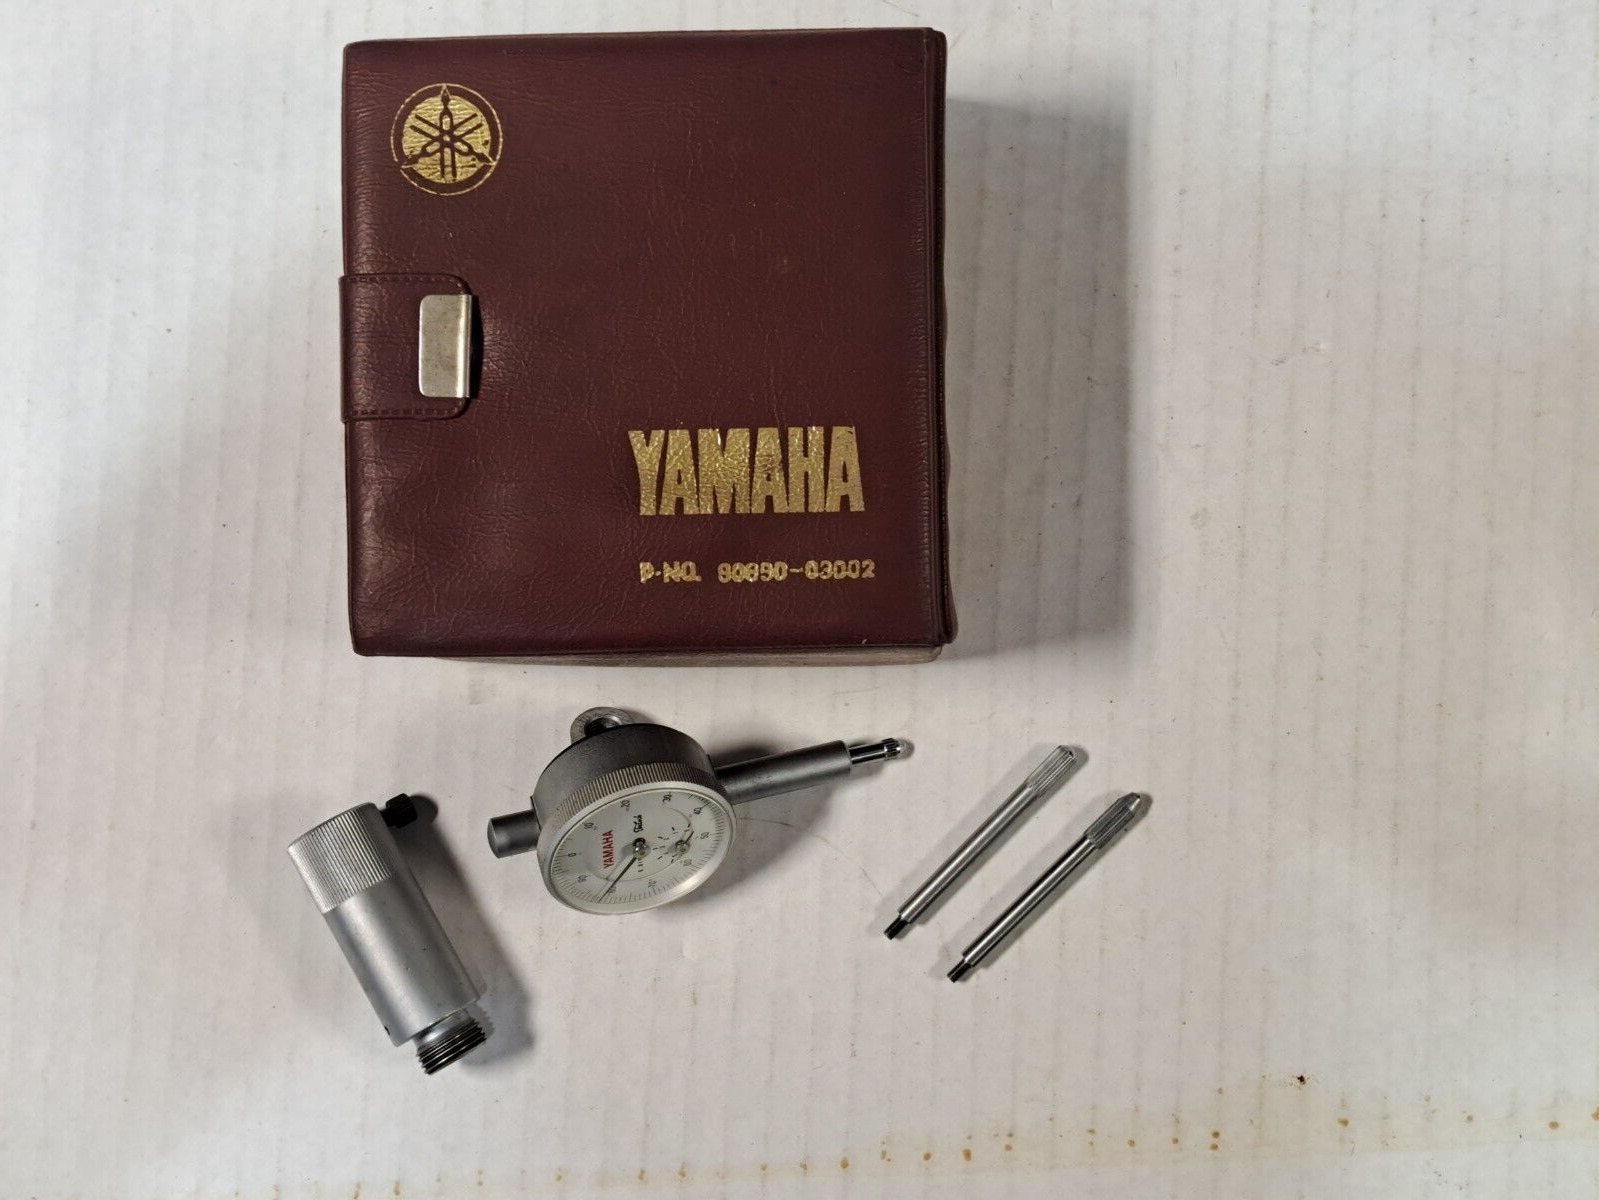 Lightly Used Yamaha Engine Vintage TDC Dial Indicator P-NO. 90890-03002